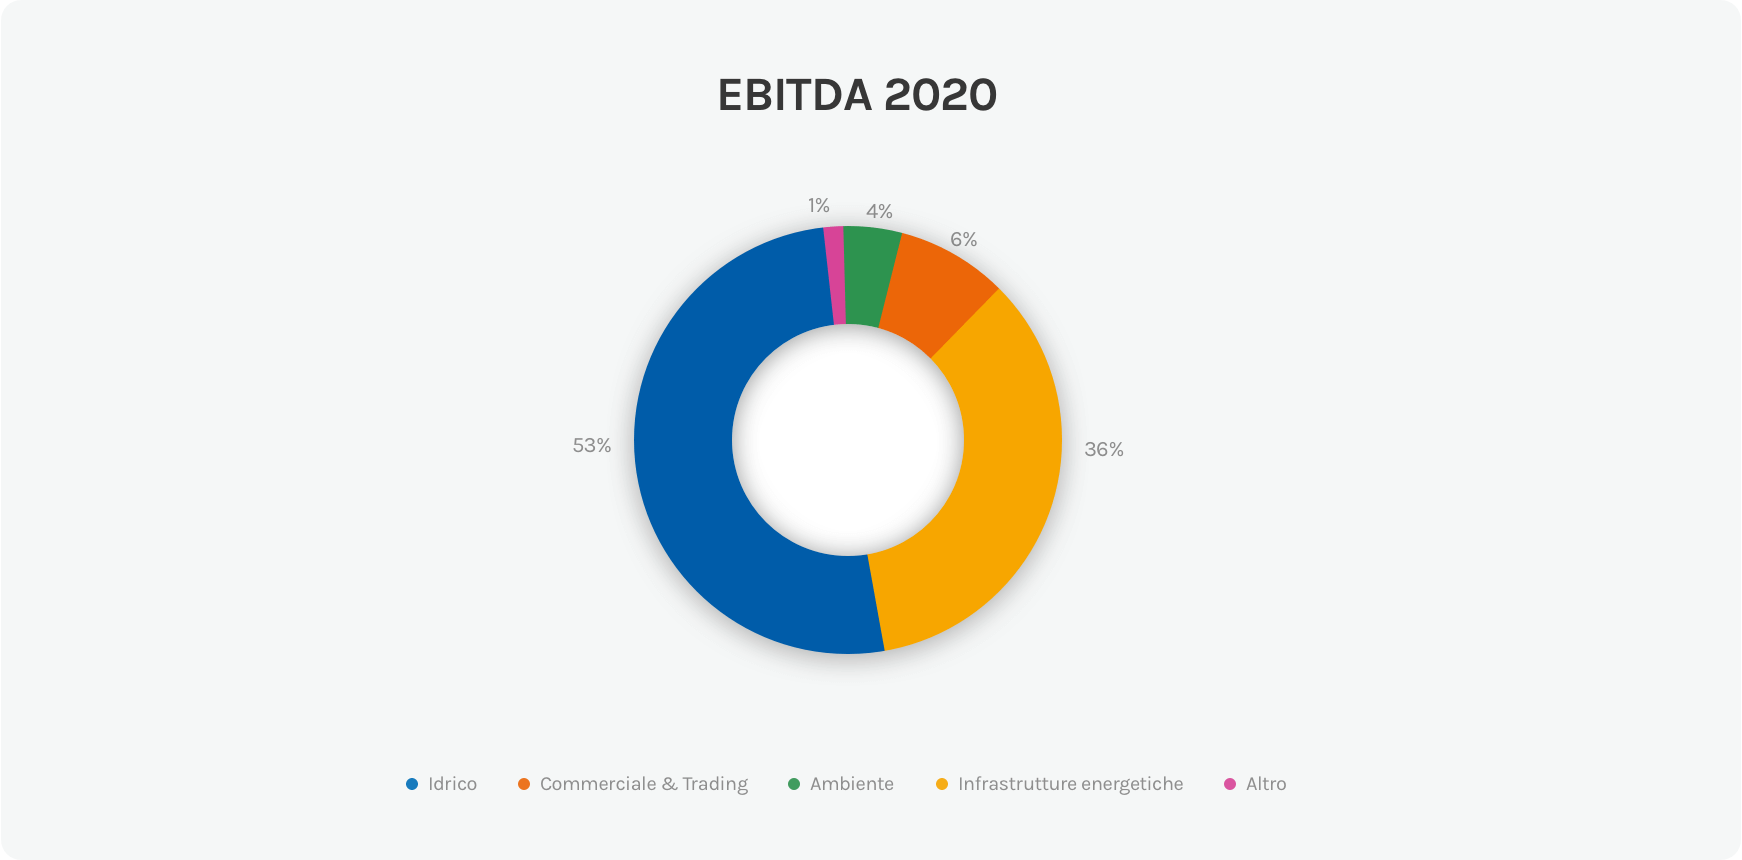 Grafico sull'EBITDA di Gruppo Acea nel 2020